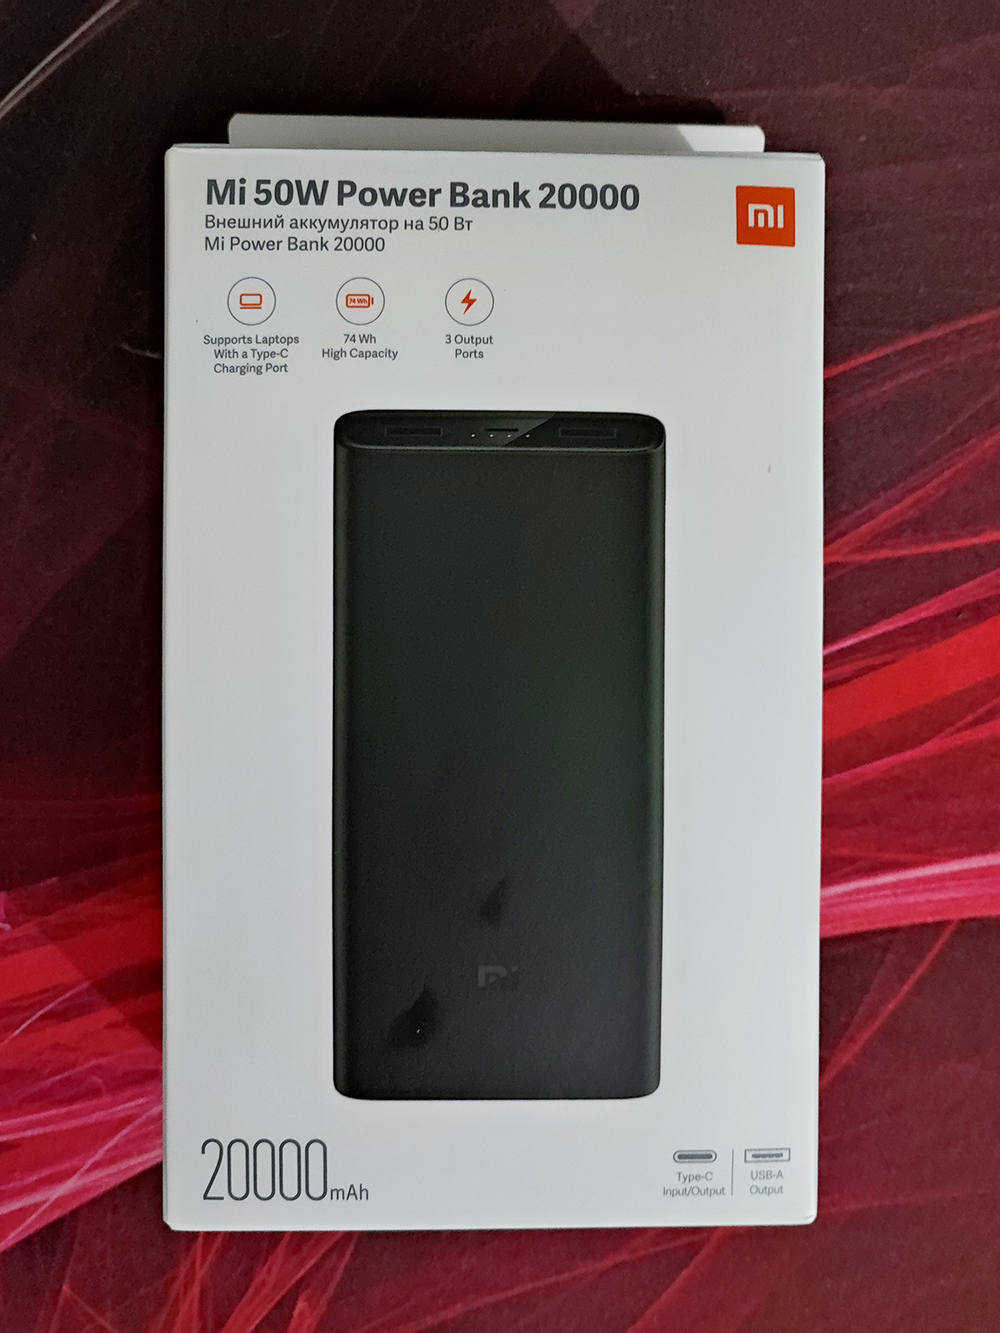 Mi 50W Power Bank, Xiaomi España